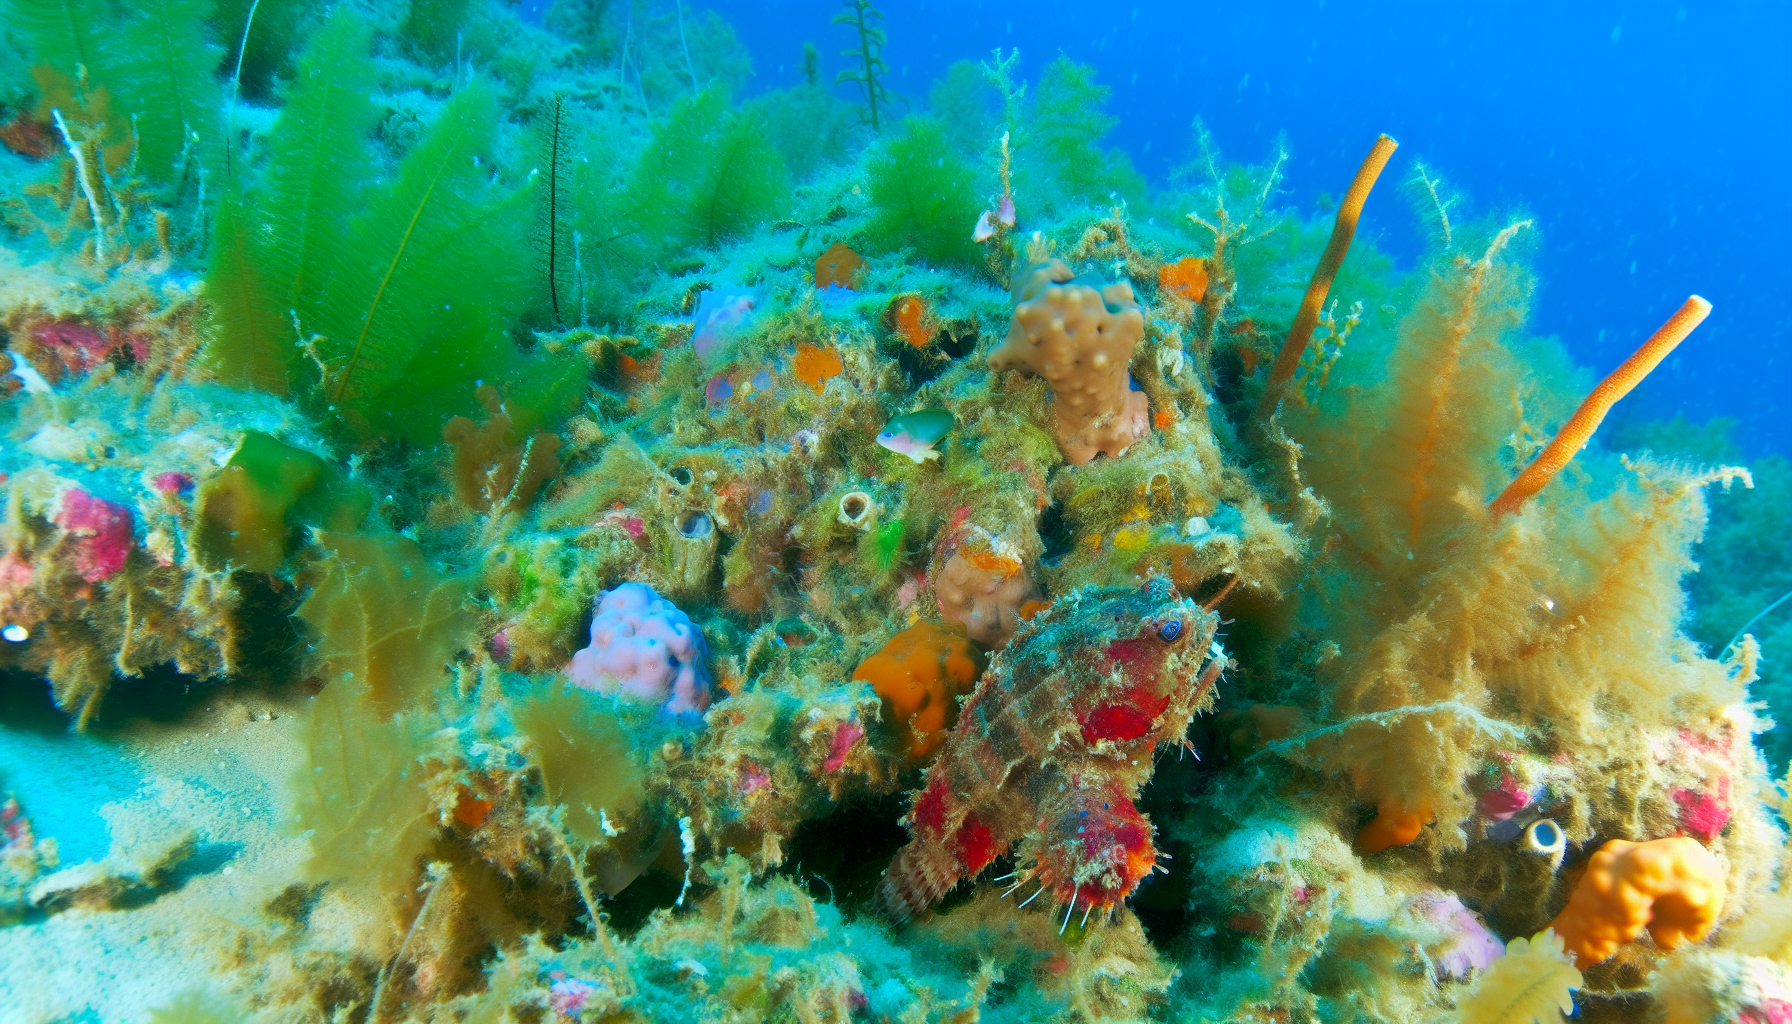 Invasive lessepsian species: unseen threat to mediterranean seabed ecosystem